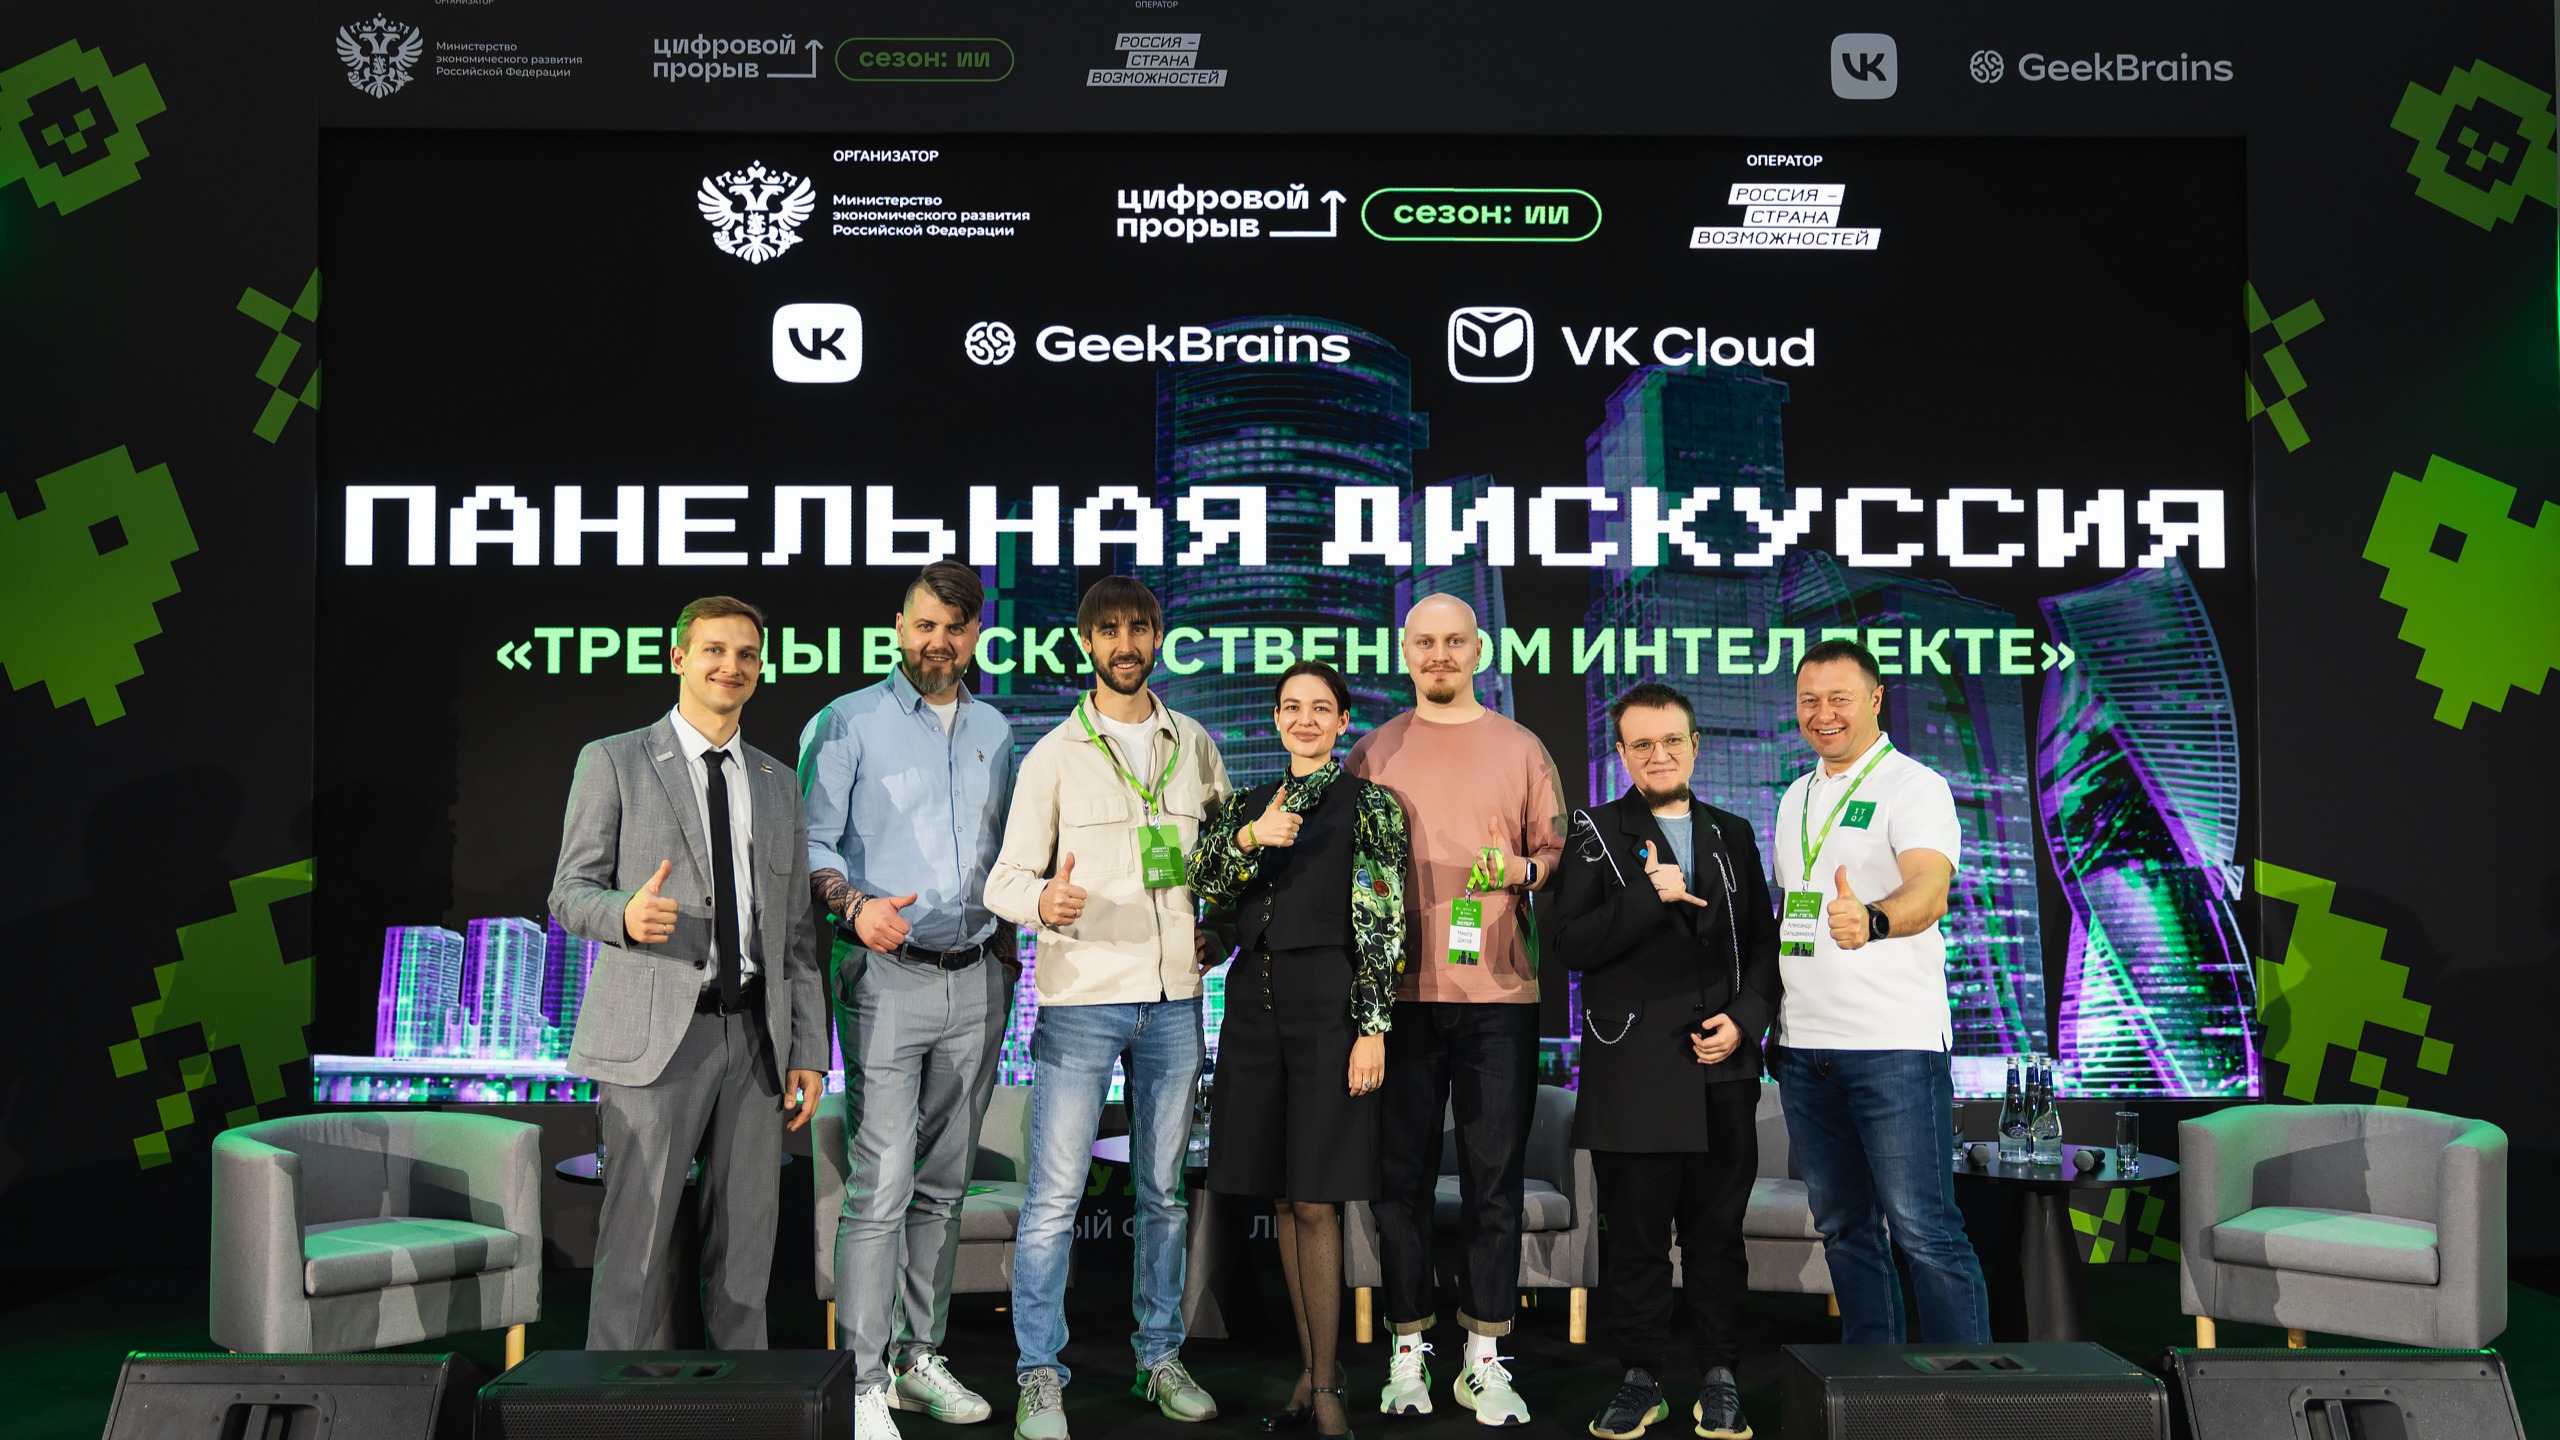 В Москве стартовал отраслевой окружной хакатон по искусственному интеллекту с призовым фондом 3 000 000 рублей